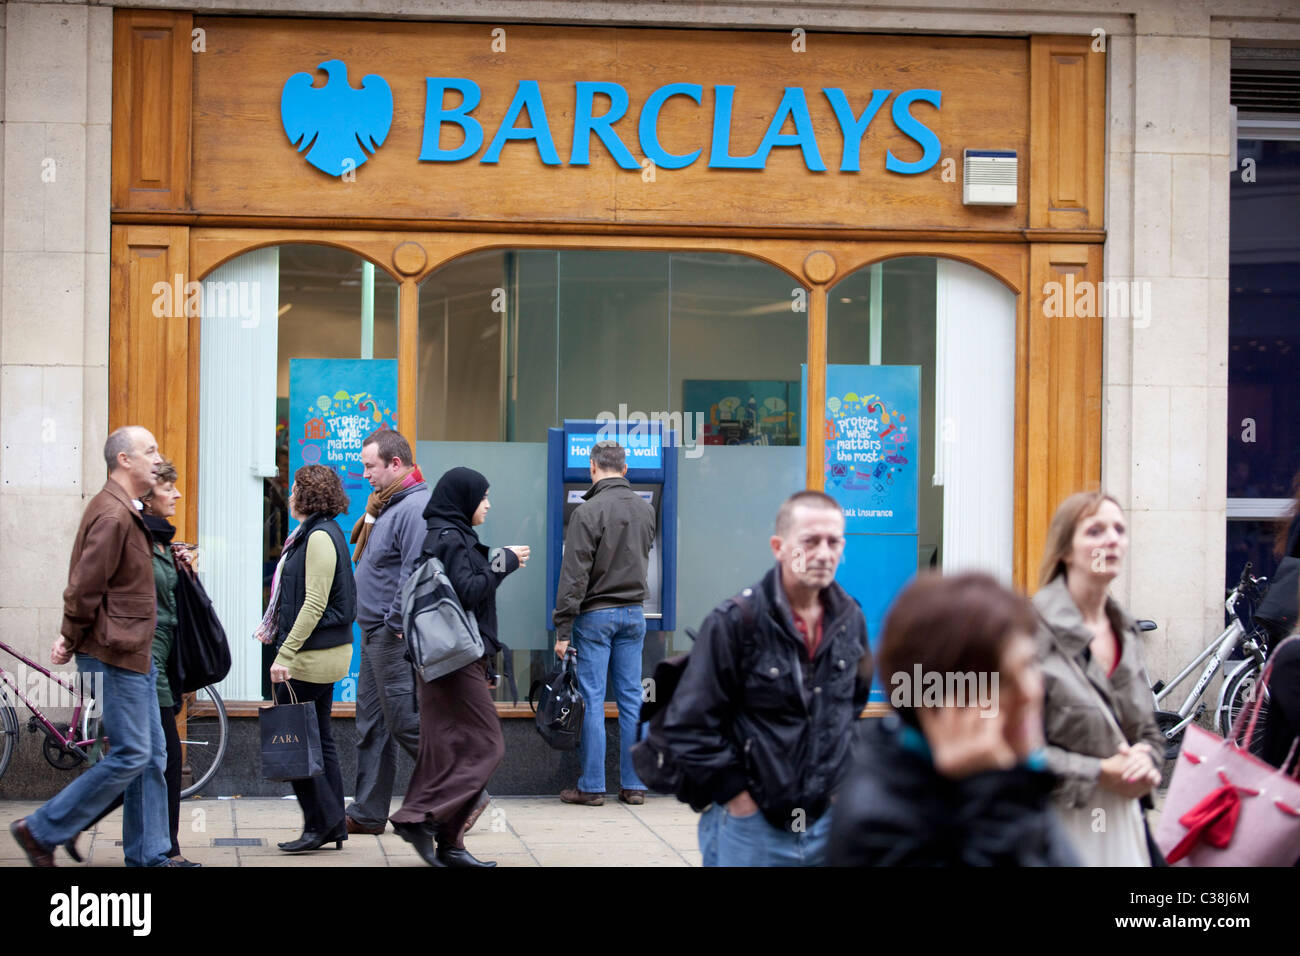 Exterieur der Barclays Bank. Stockfoto